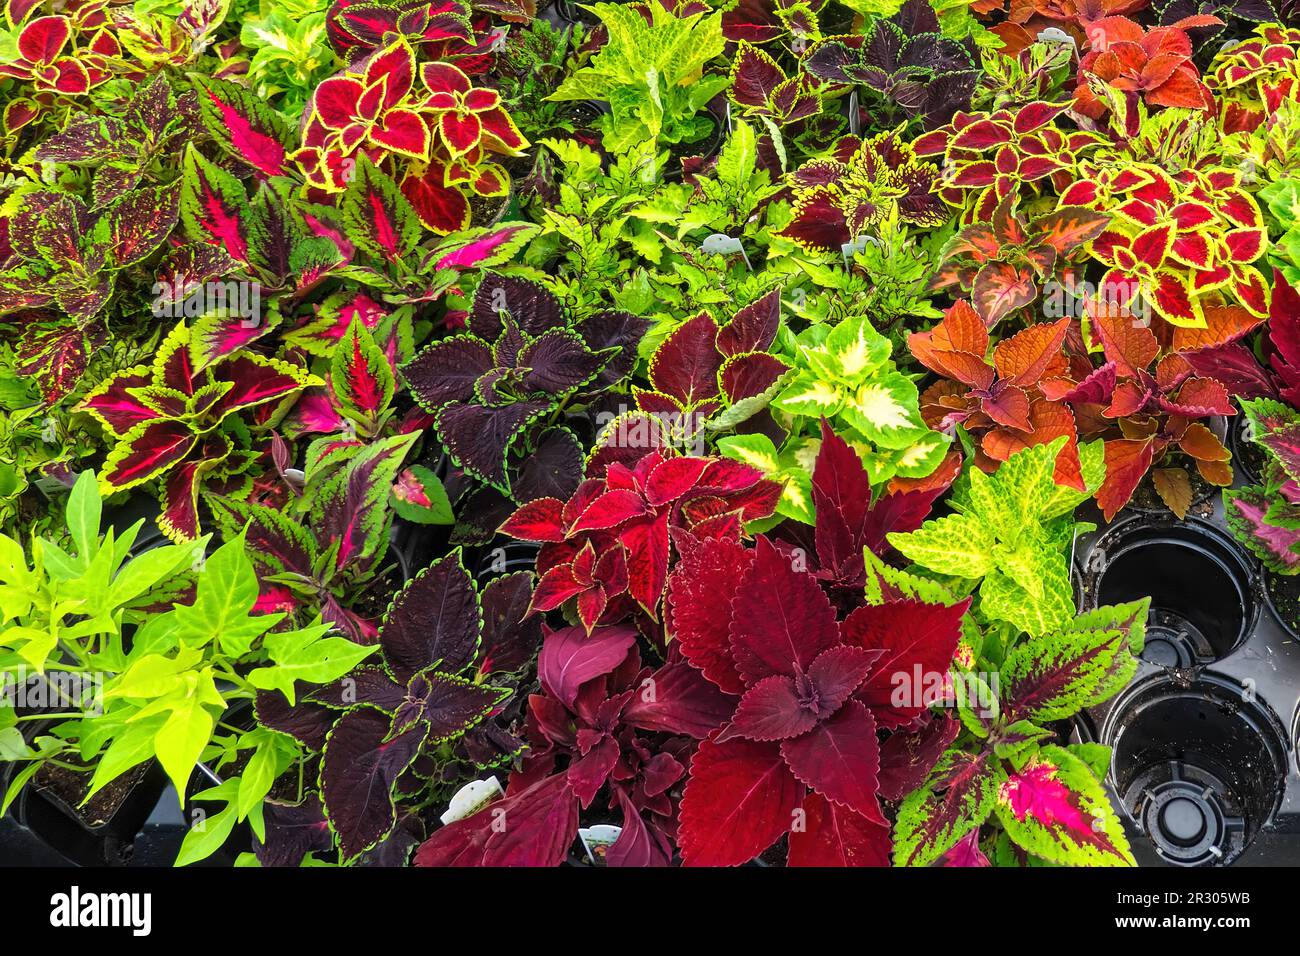 Coleus - Plectranthus scutellarioides - feuilles colorées de plantes à vendre dans un jardin. Colombie-Britannique, Canada. Banque D'Images